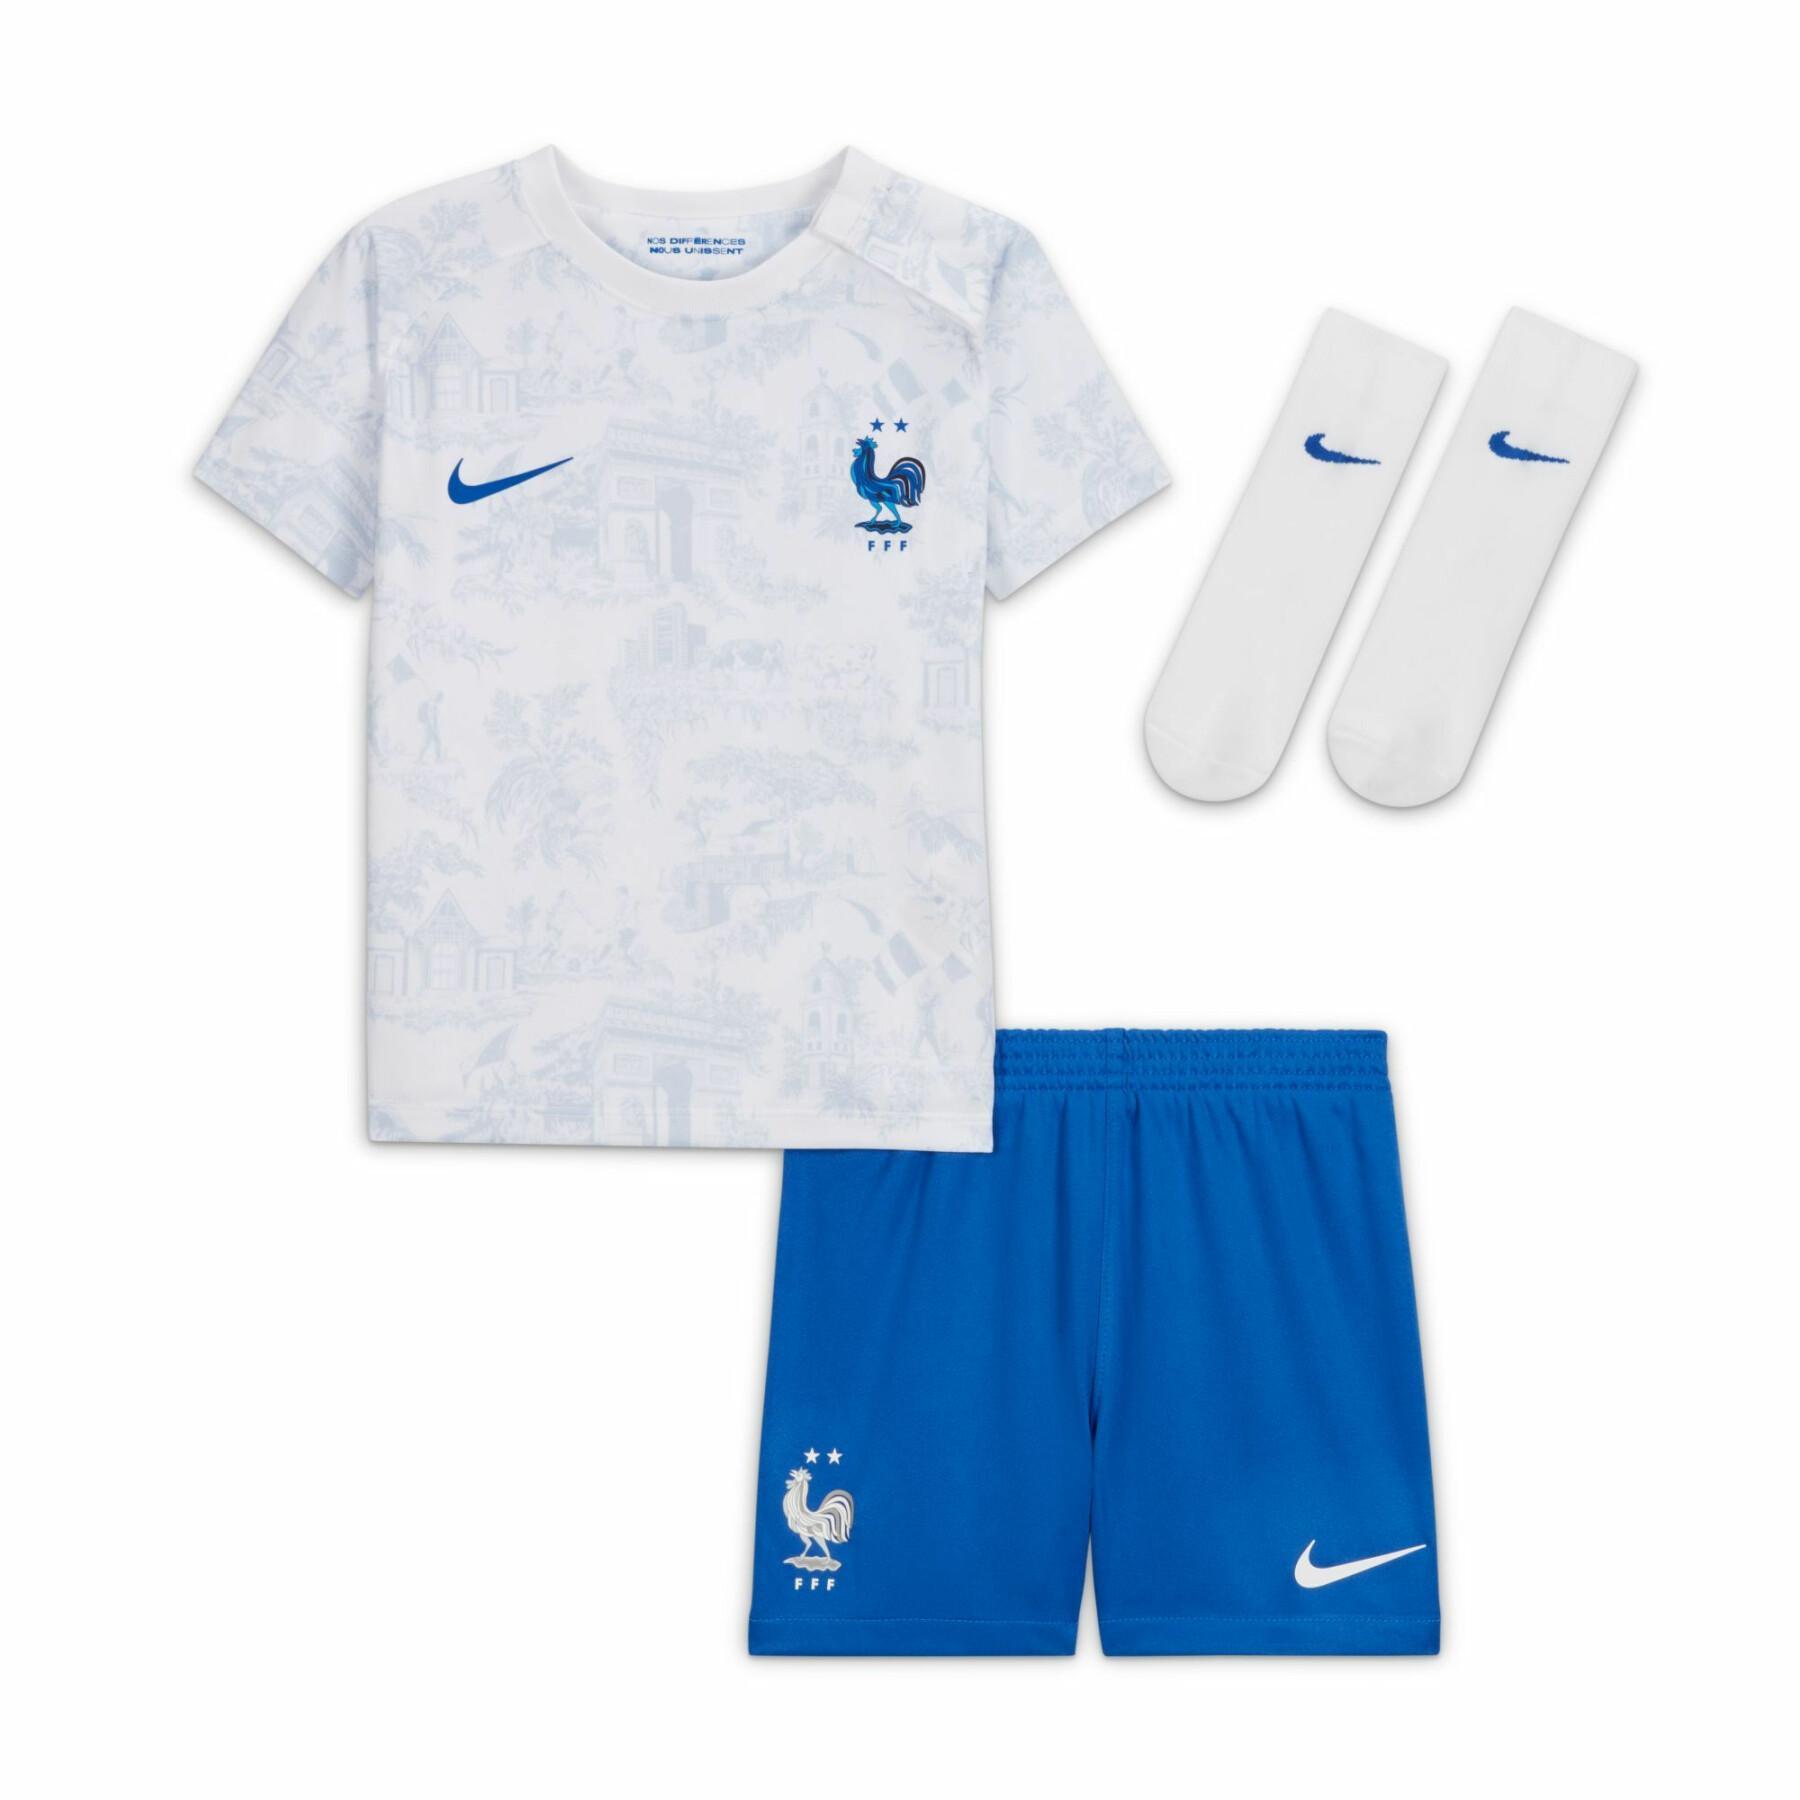 Mini kit de visitante para bebés de la Copa del Mundo 2022 France